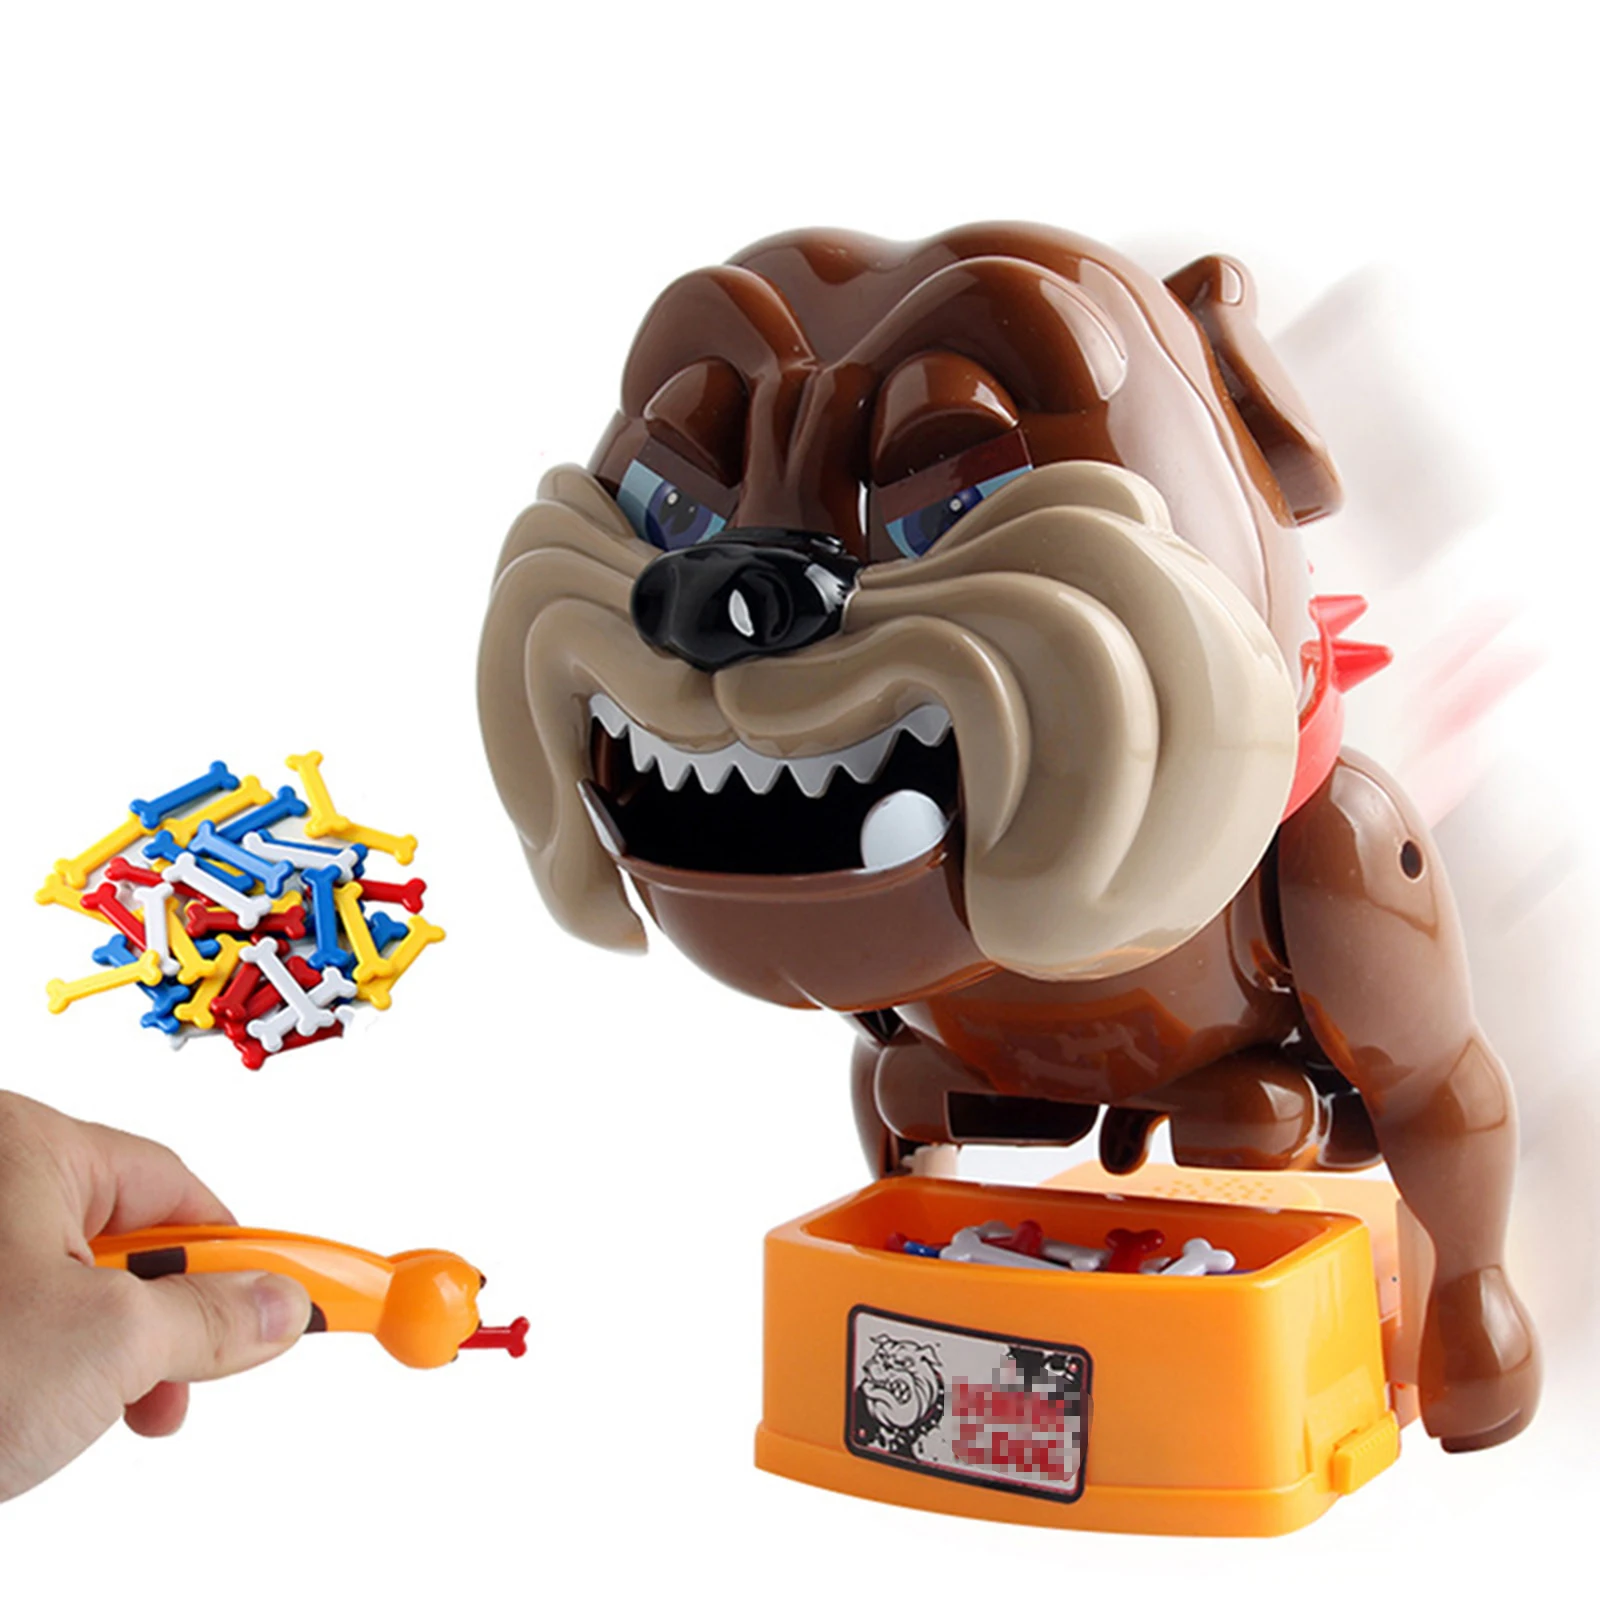 

Забавные игрушки бустер кости творческий Остерегайтесь порочная собака кусать руку, игрушка-головоломка игры для дома на открытом воздухе ...